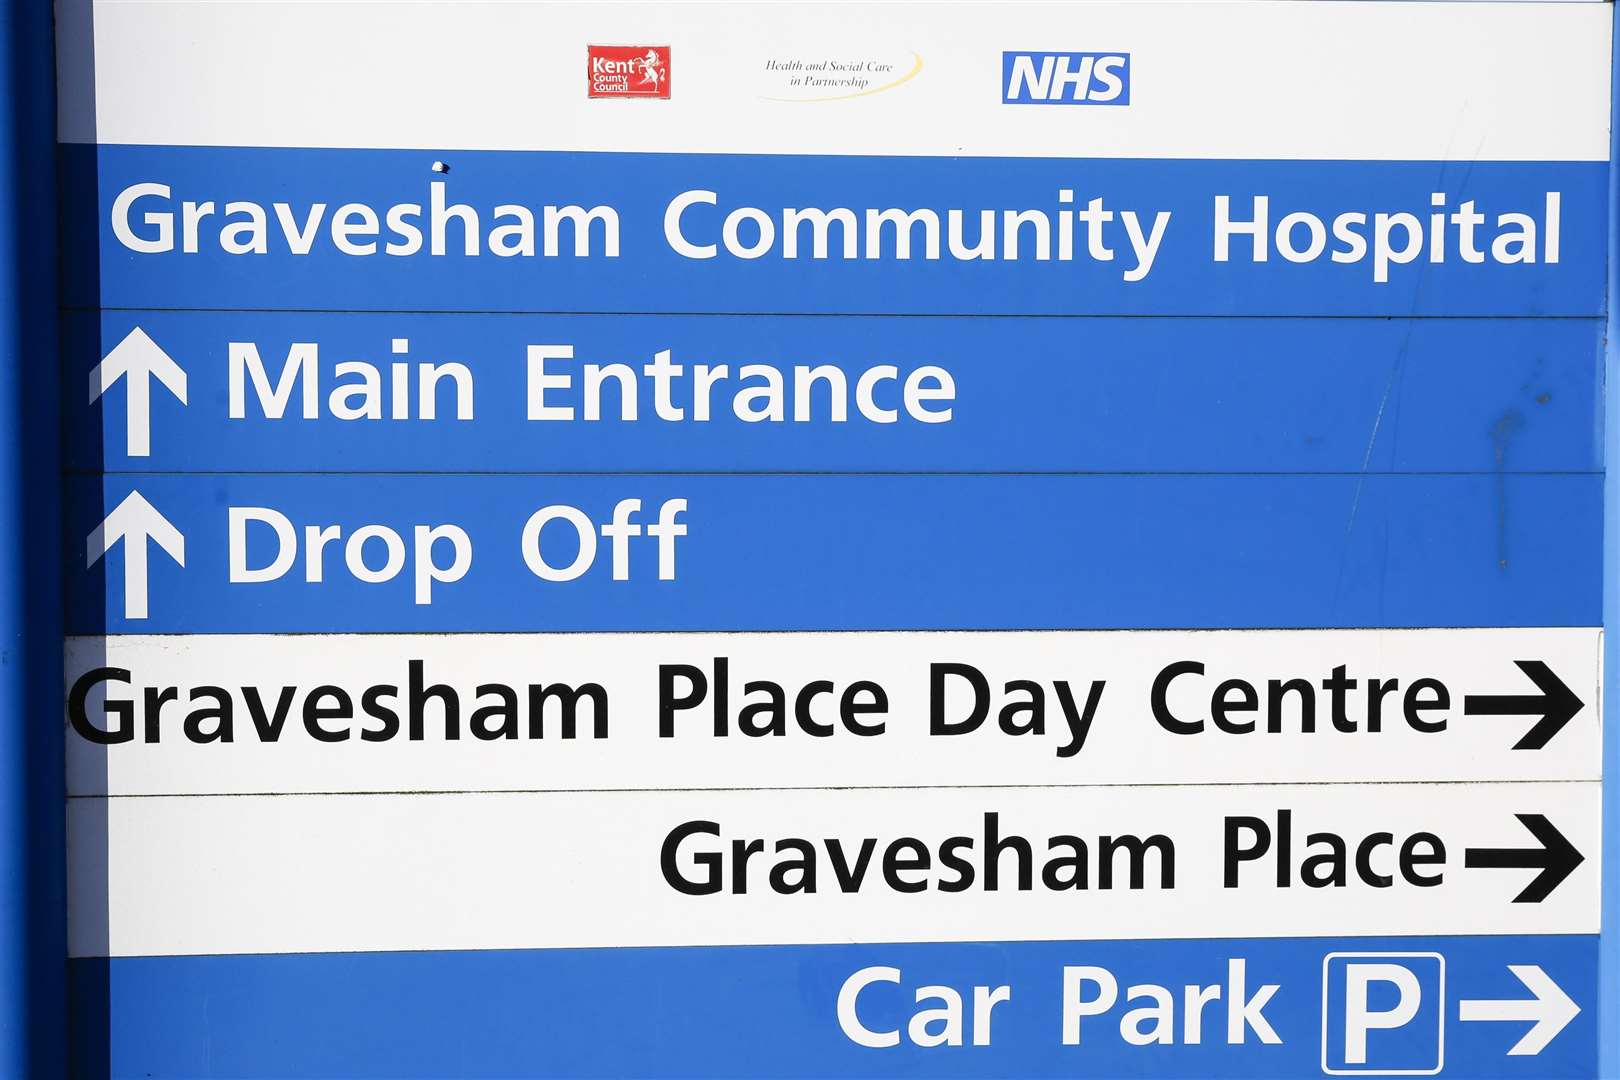 The Gravesham Community Hospital, Bath Street, Gravesend